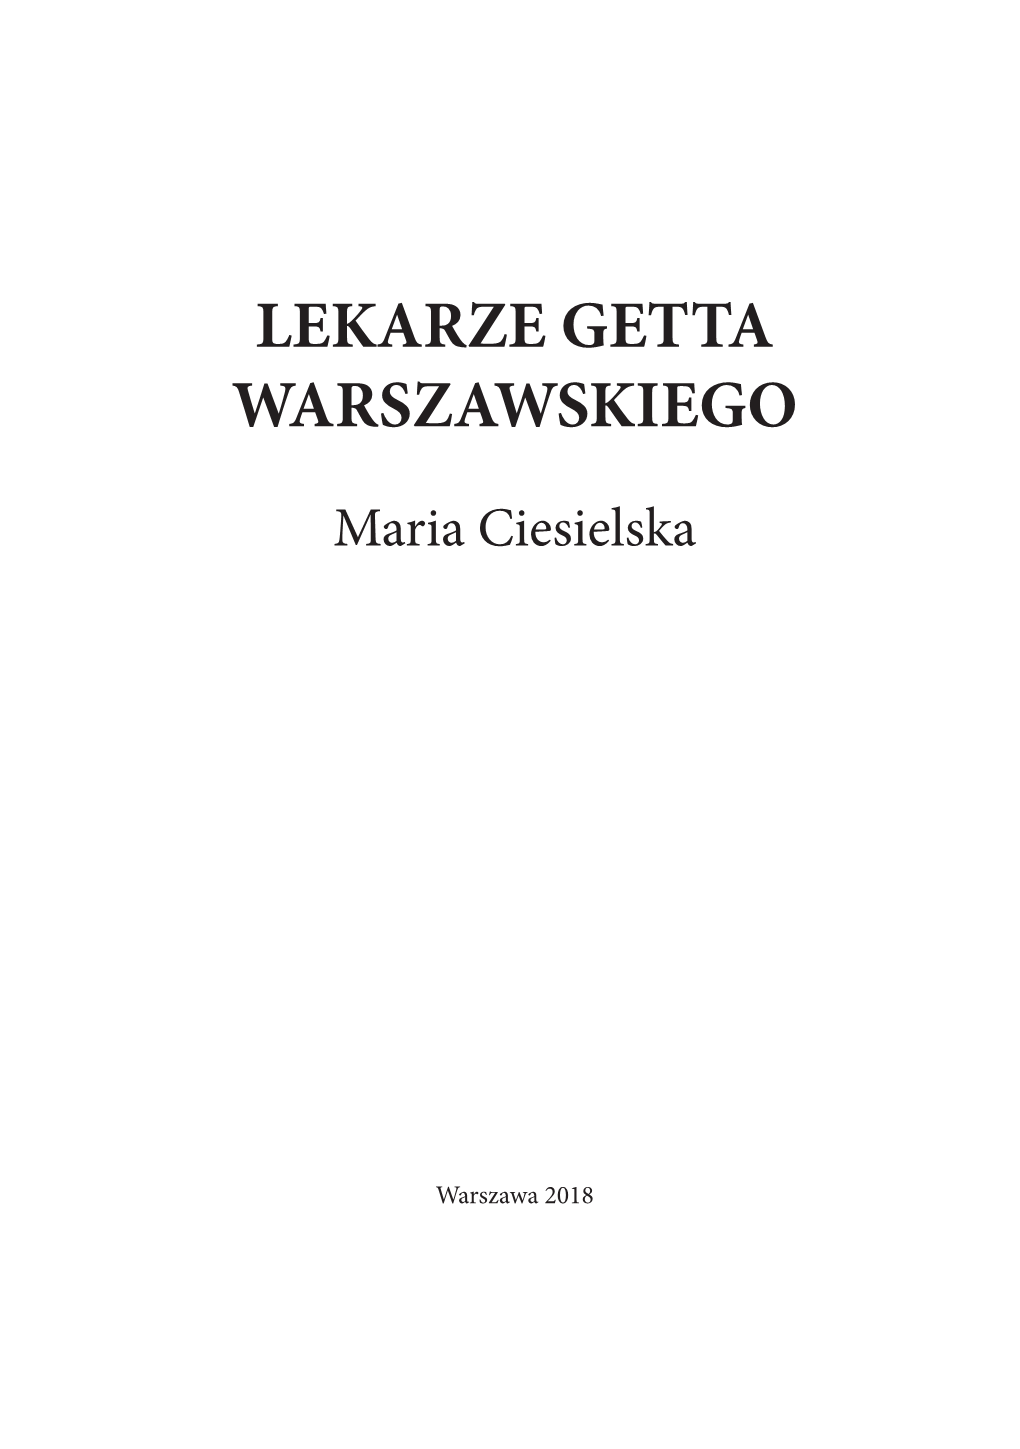 Lekarze Getta Warszawskiego